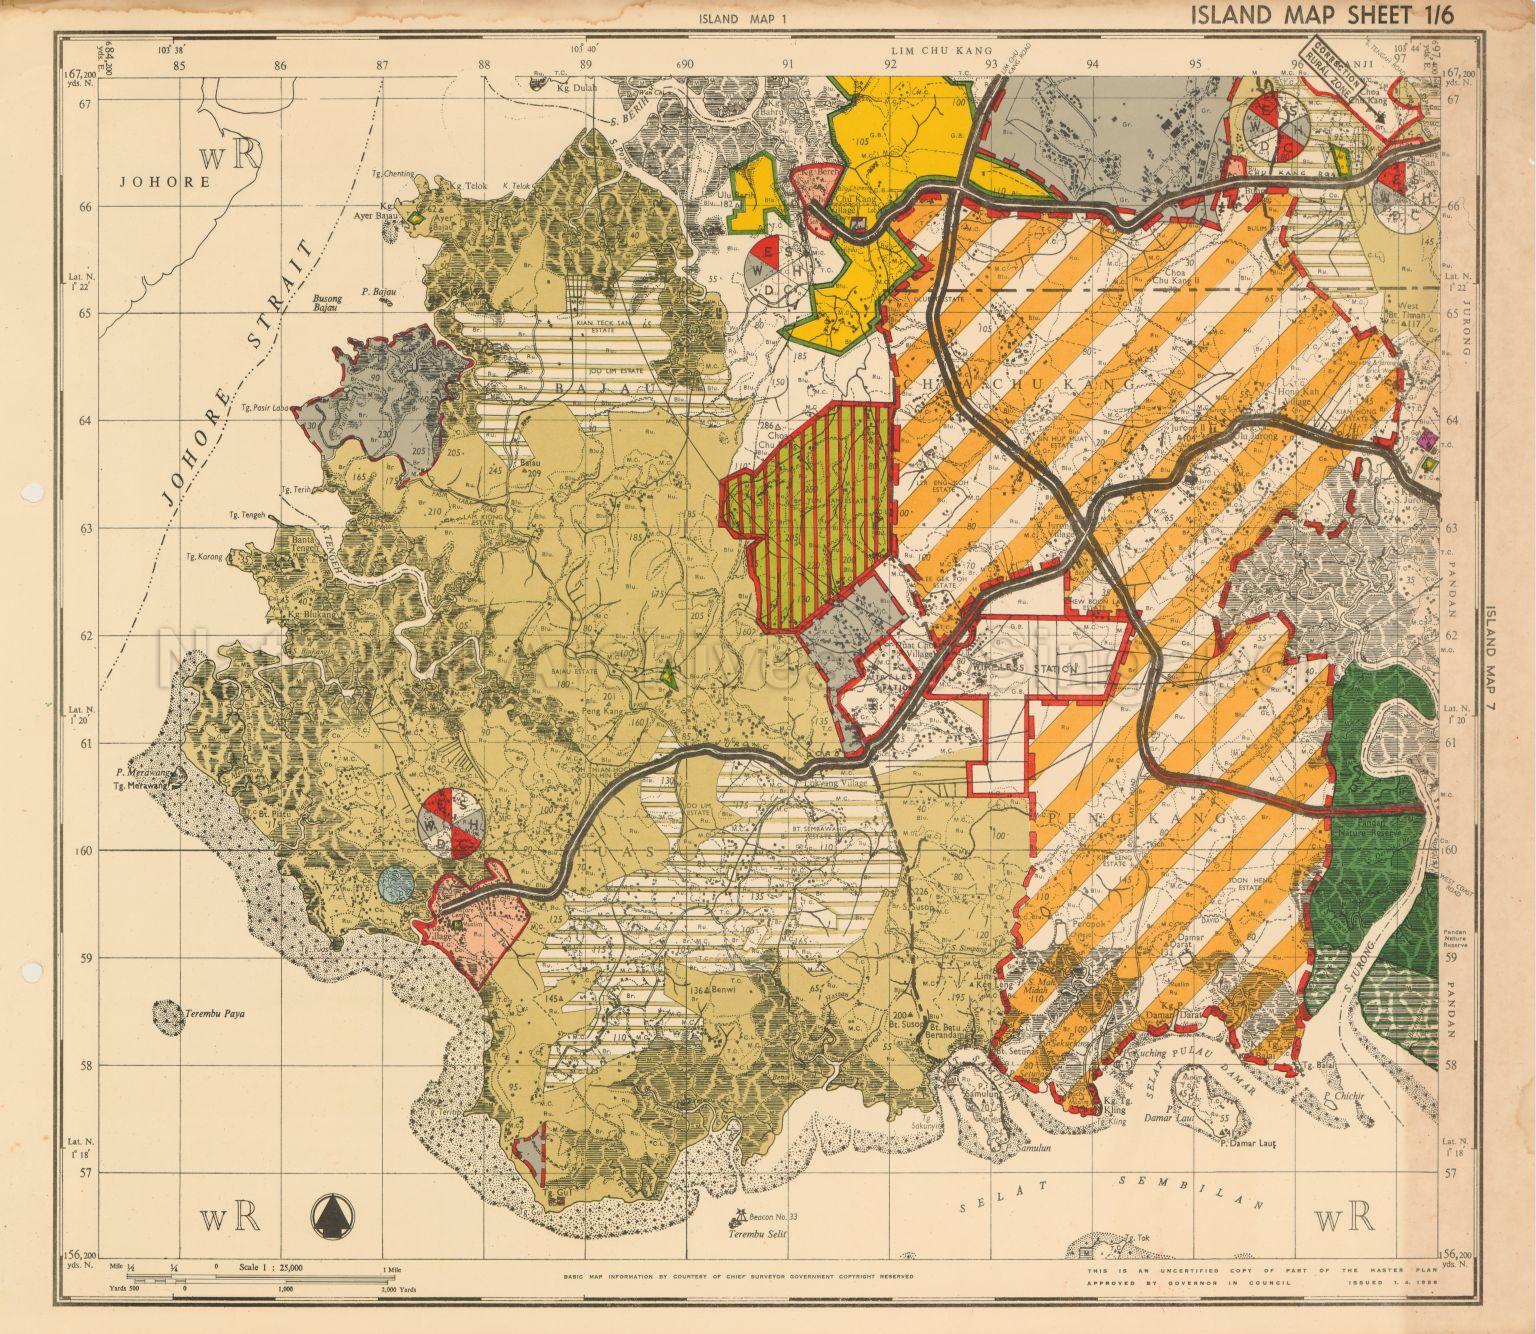 1958 Master Plan: Singapore Island Map Sheet 1/6